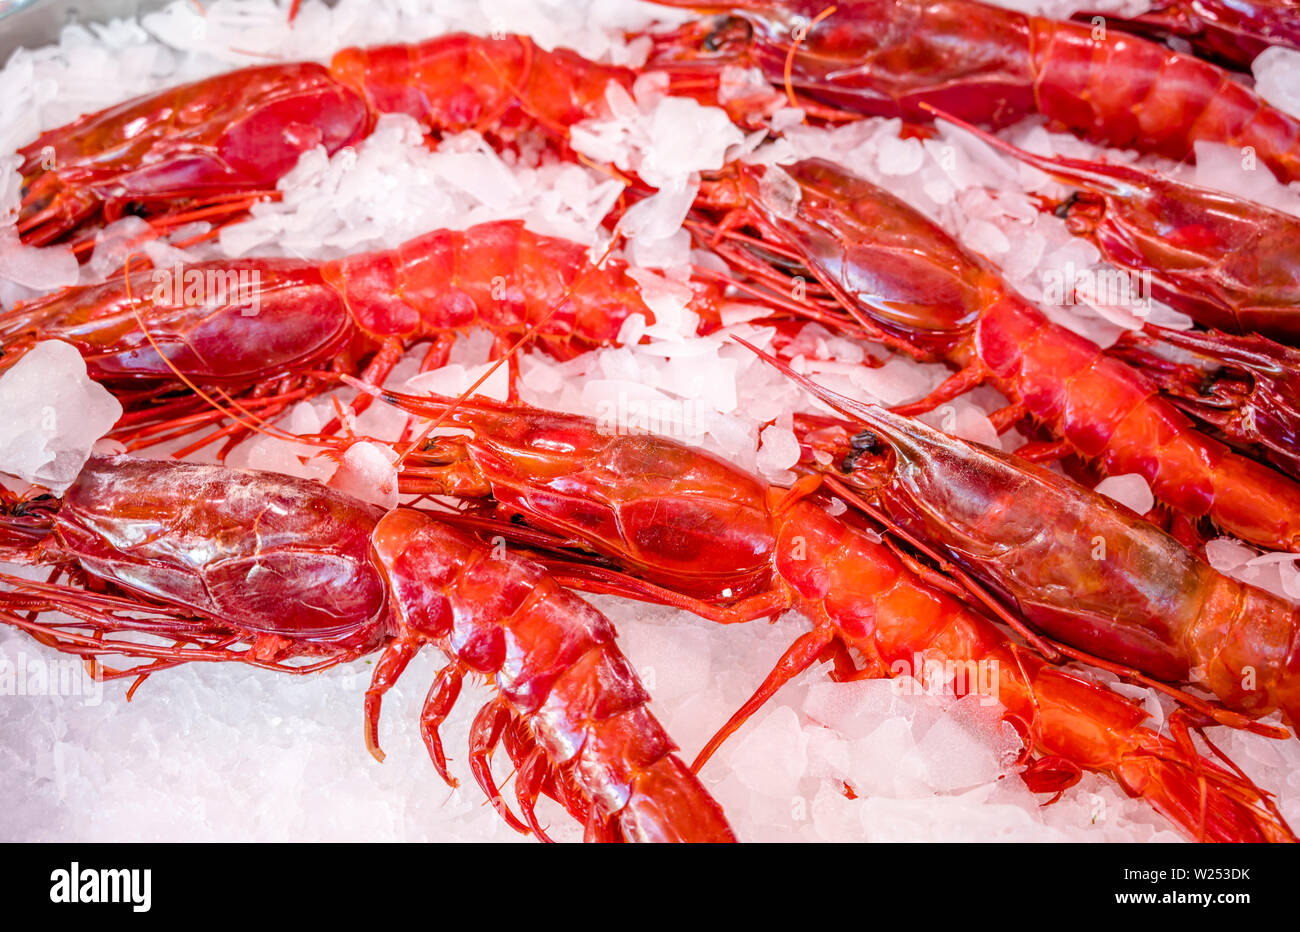 Red Lobster - ein echter Leckerbissen für Liebhaber von leckerem Essen. Angeln artels Fang dieser Arten von Krebstieren und in Eis halten für den Verkauf an Geschäfte oder re Stockfoto